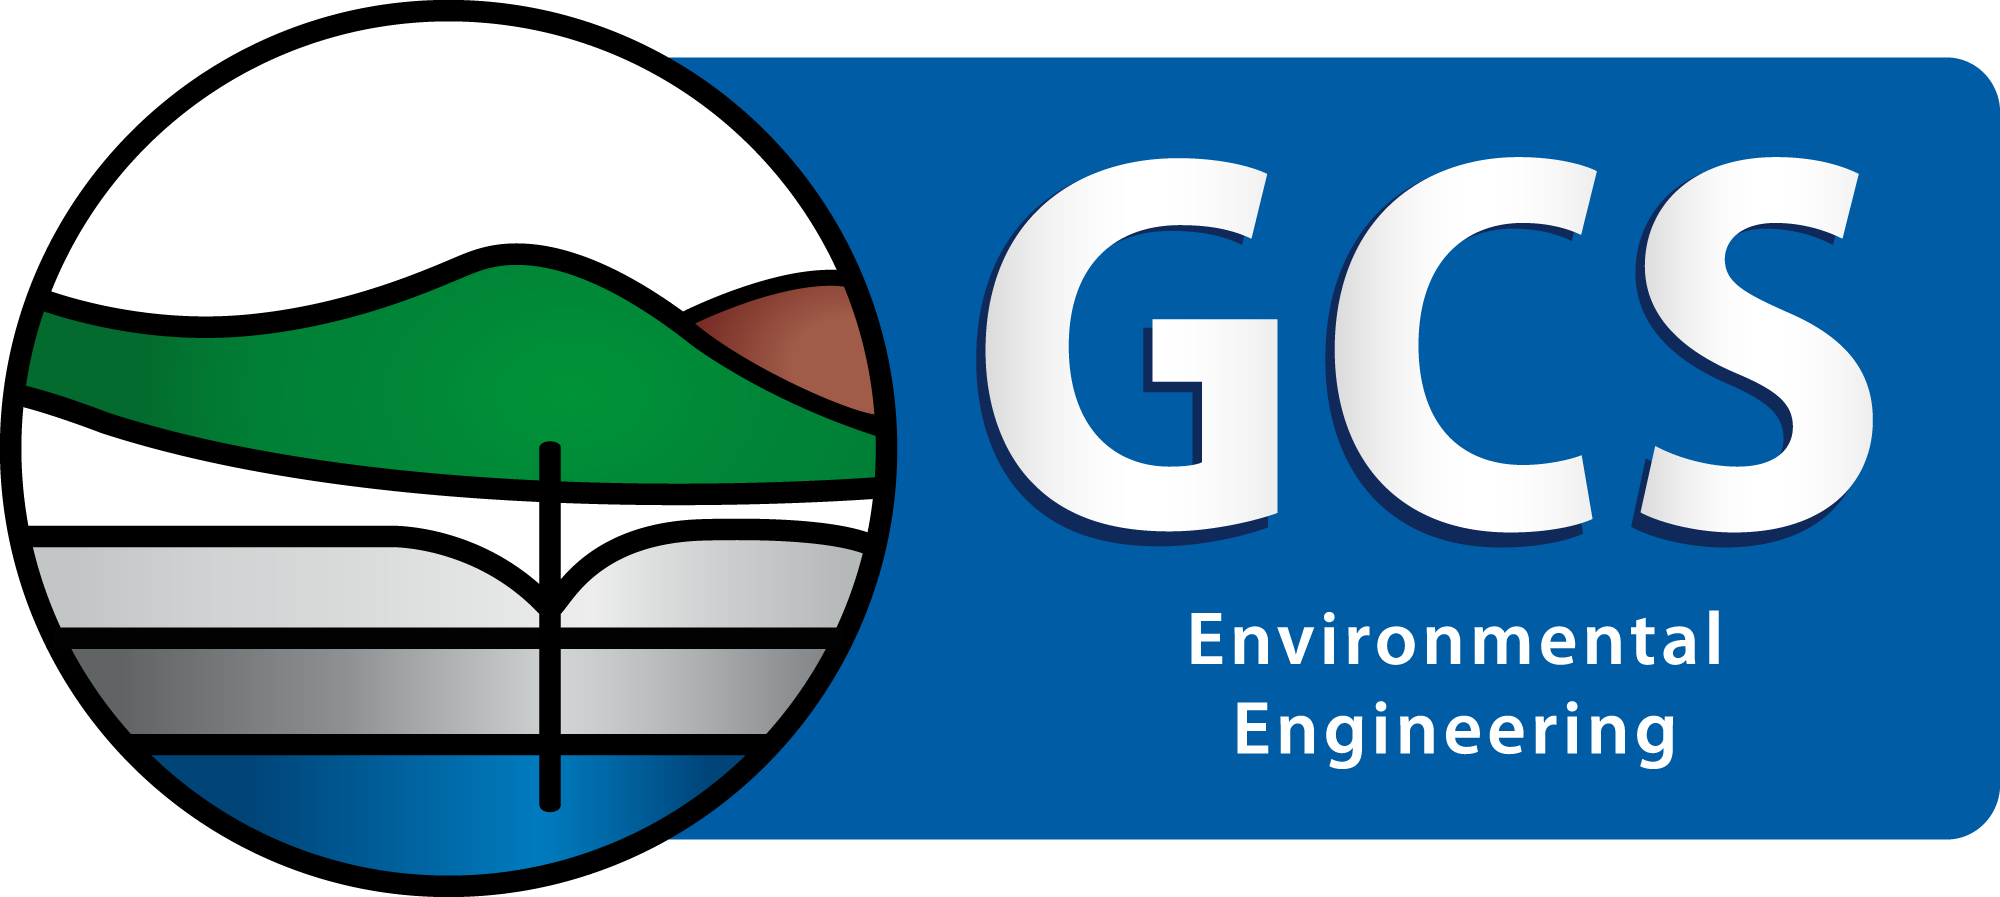 Gcs Environmental Engineering Logo - Gcs Water And Environment (2000x897)